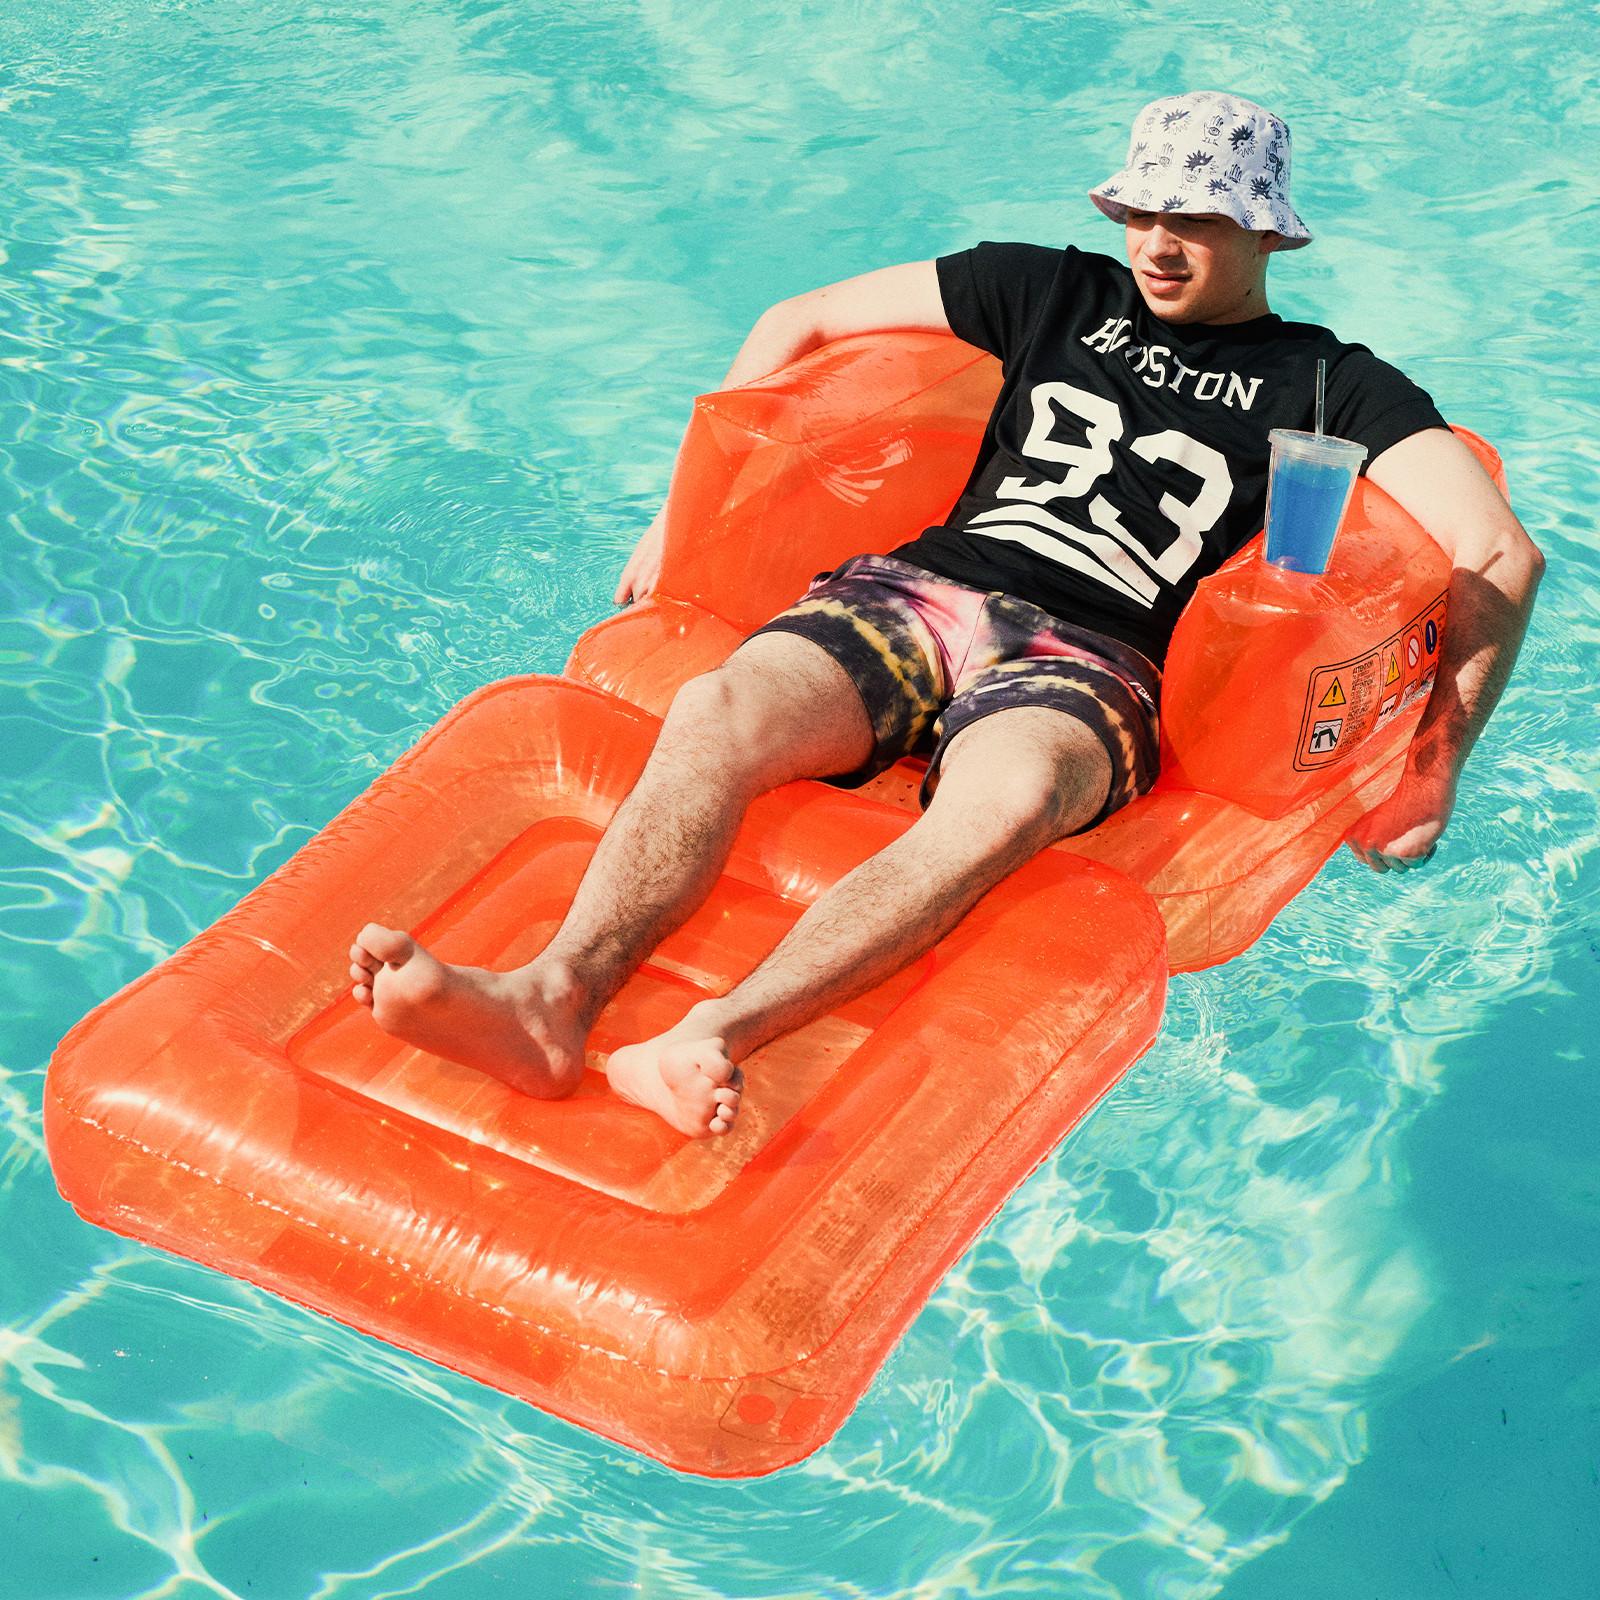 Uomo su materassino in piscina con cappello da pescatore, T-shirt di Houston e pantaloncini tie-dye